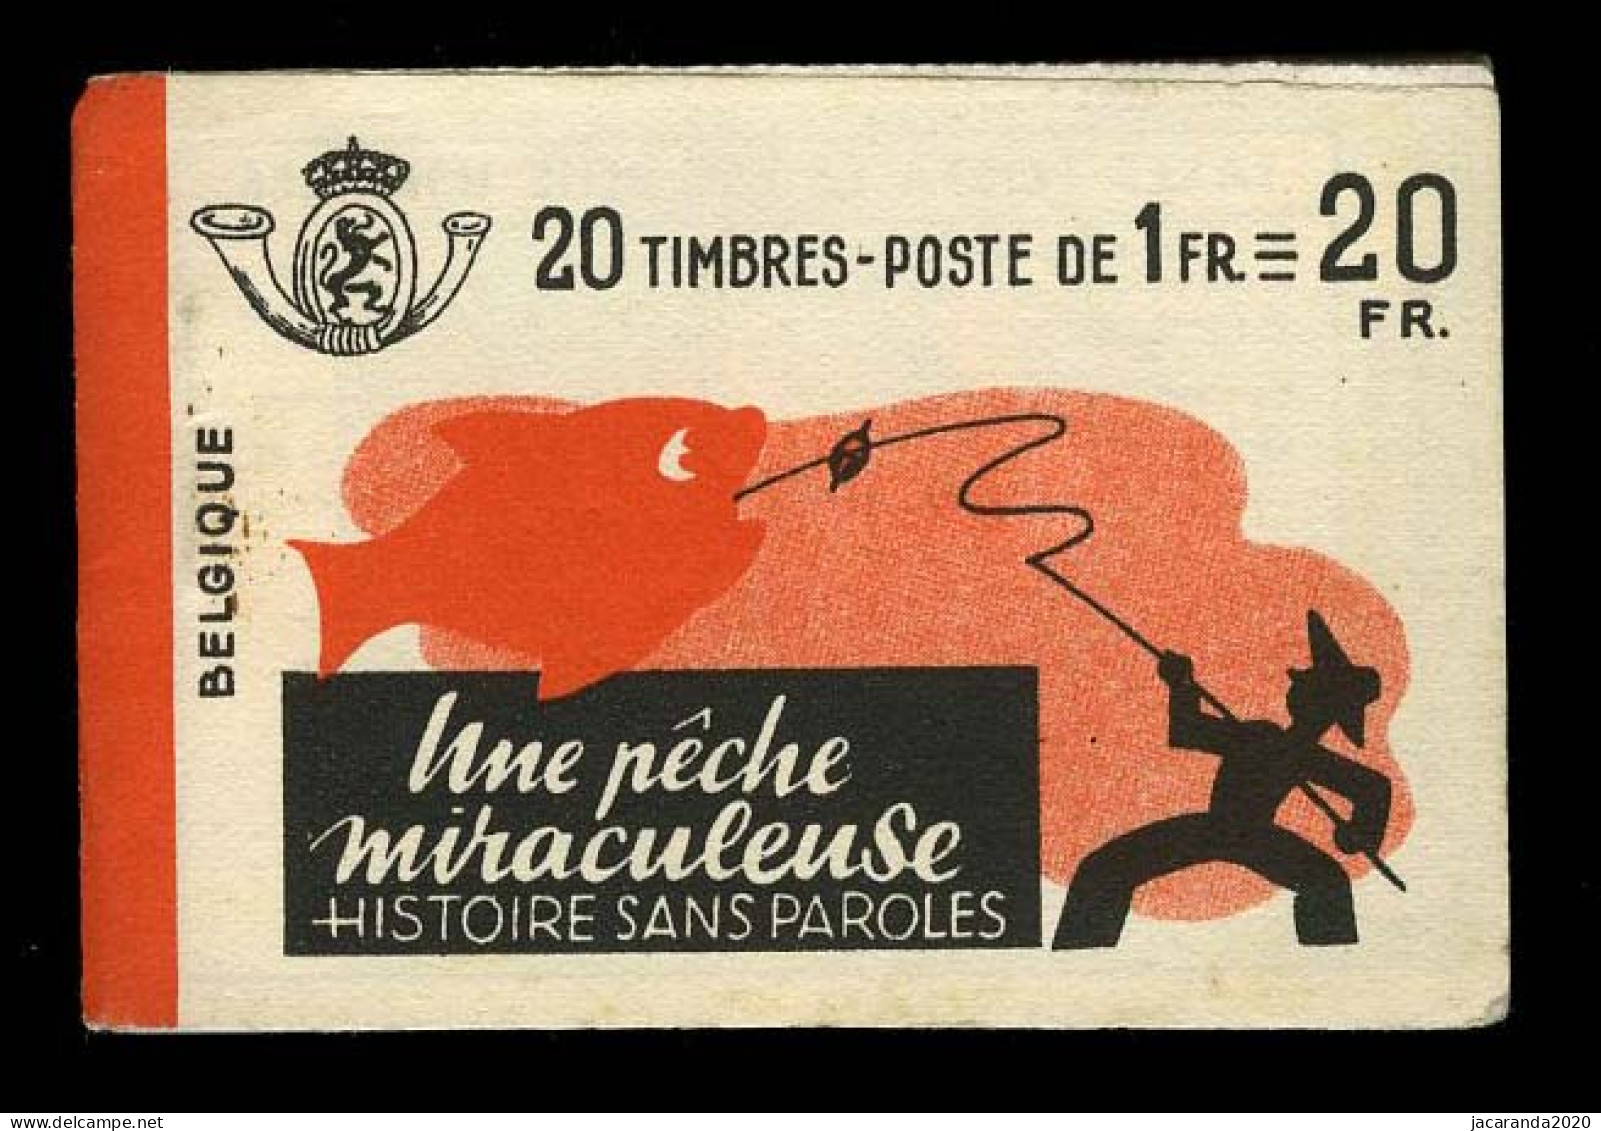 België A35a - Boekje "Une Pêche Miraculeuse" - "Krefft" - 1941 - Rode Rugband - 1907-1941 Oude [A]